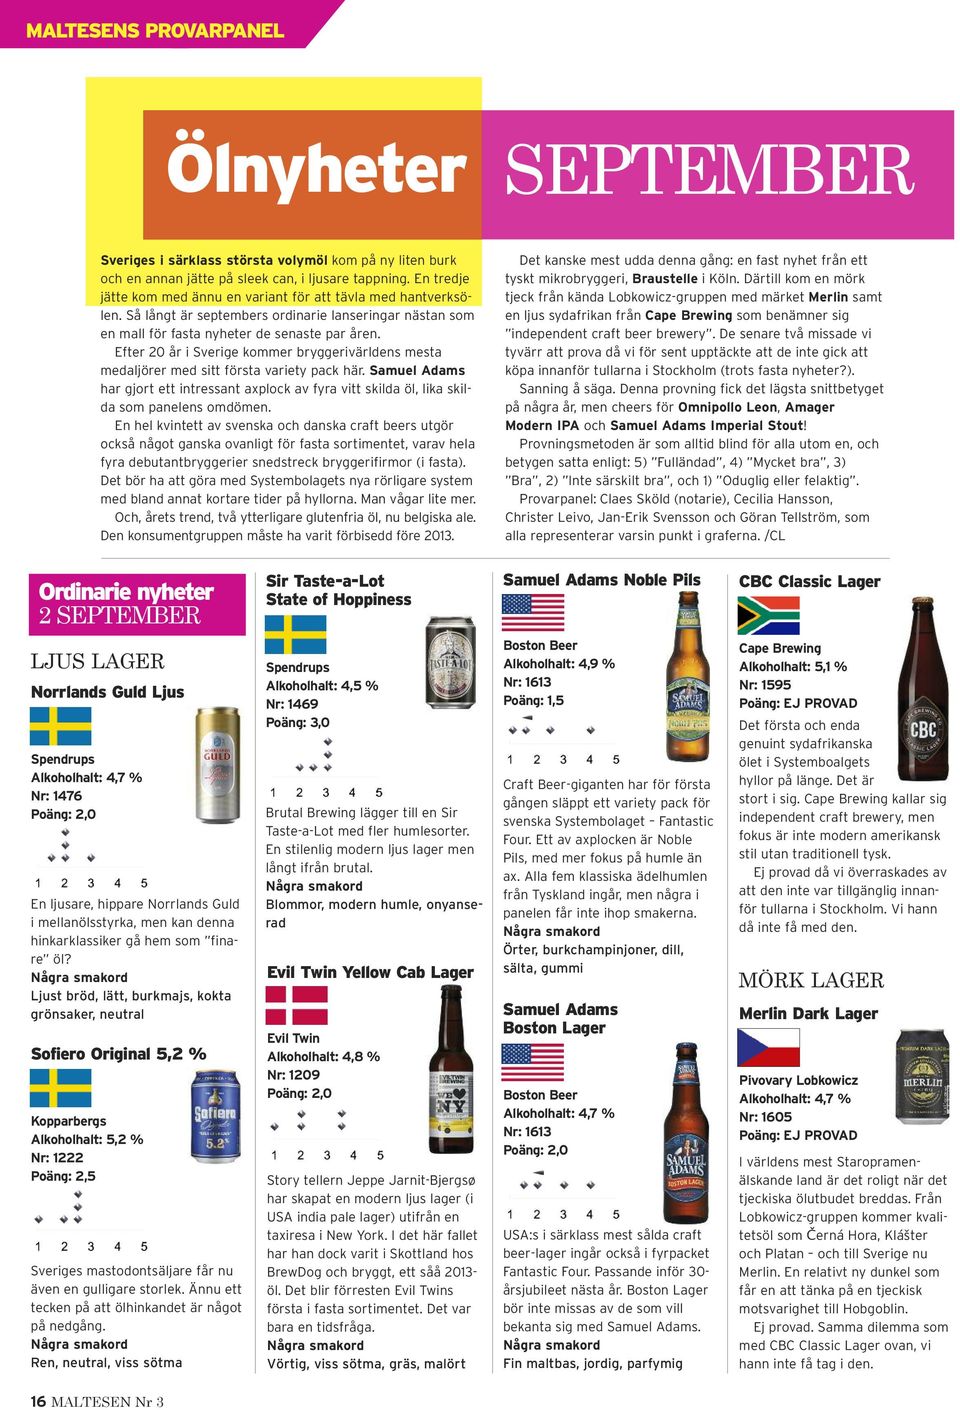 Efter 20 år i Sverige kommer bryggerivärldens mesta medaljörer med sitt första variety pack här. Samuel Adams har gjort ett intressant axplock av fyra vitt skilda öl, lika skilda som panelens omdömen.